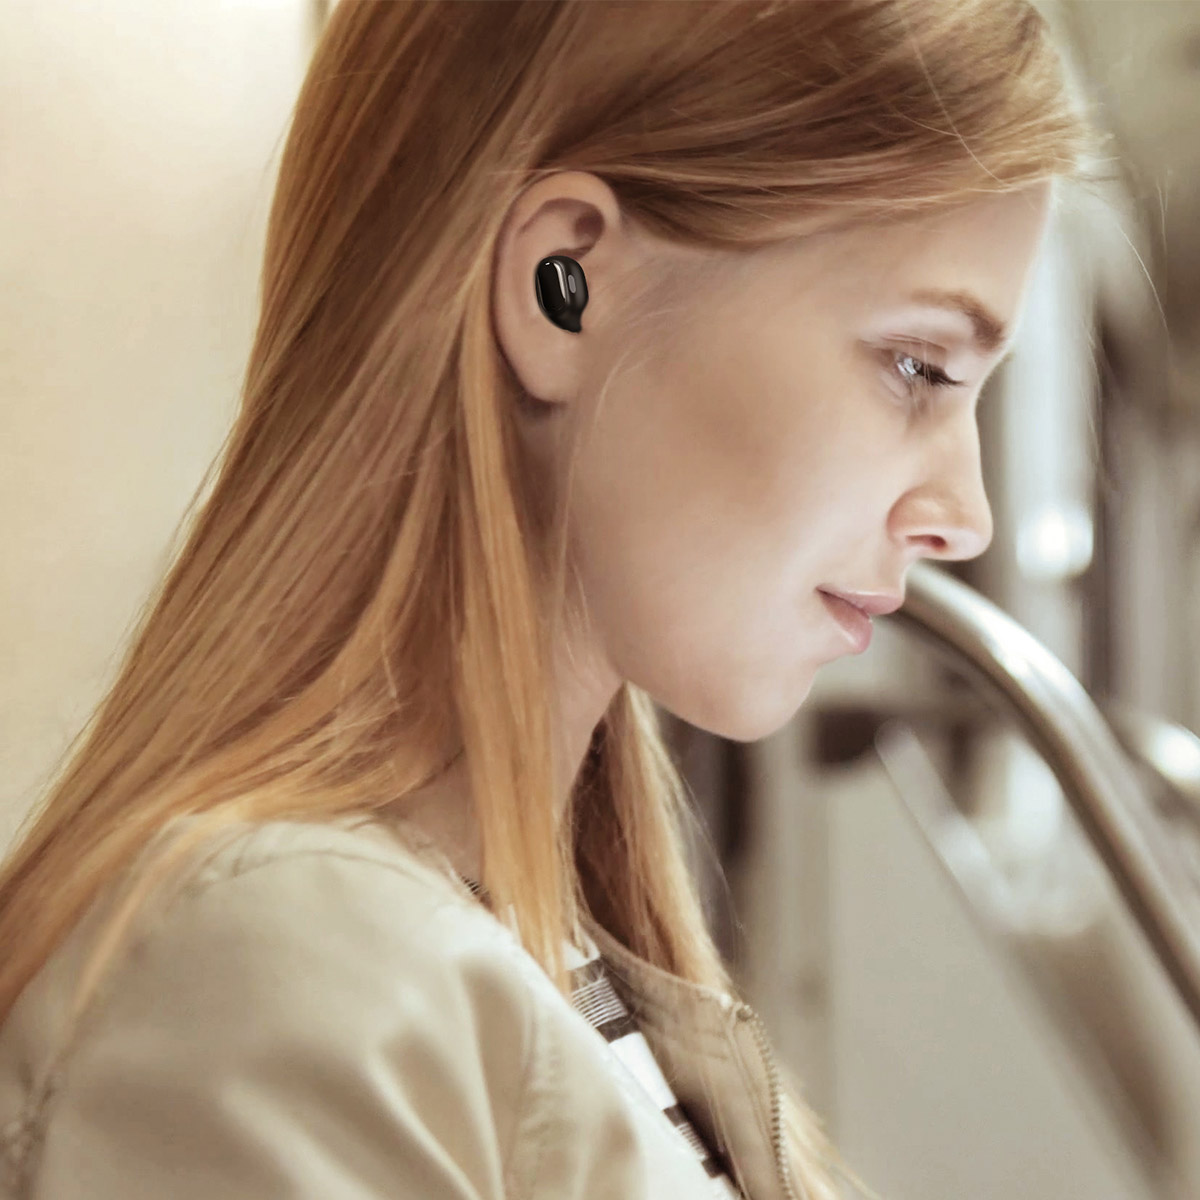 Wireless Bluetooth Earphones Offers